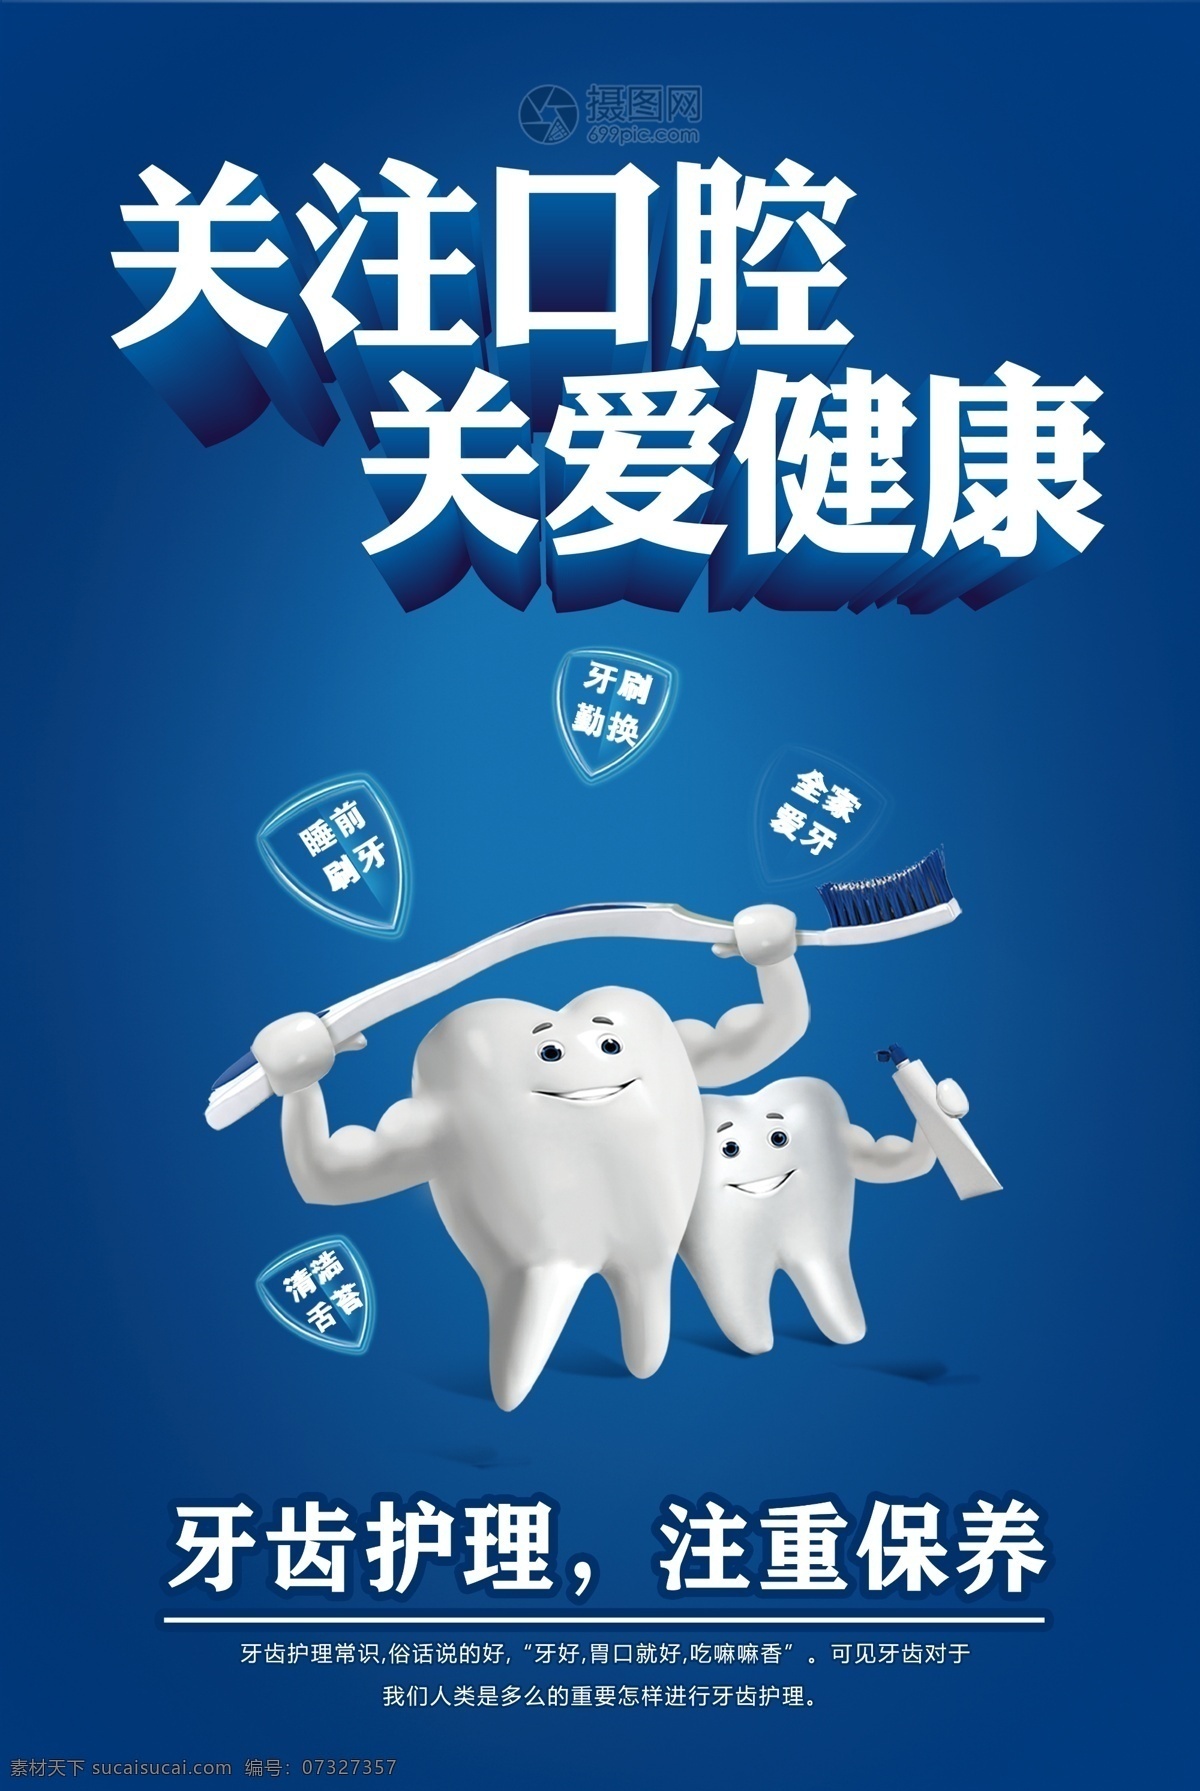 蓝色 关爱 口腔 健康 海报 医疗 看牙 爱牙 牙科医院 牙科 爱牙日活动 牙科诊所 牙科海报设计 保护牙齿